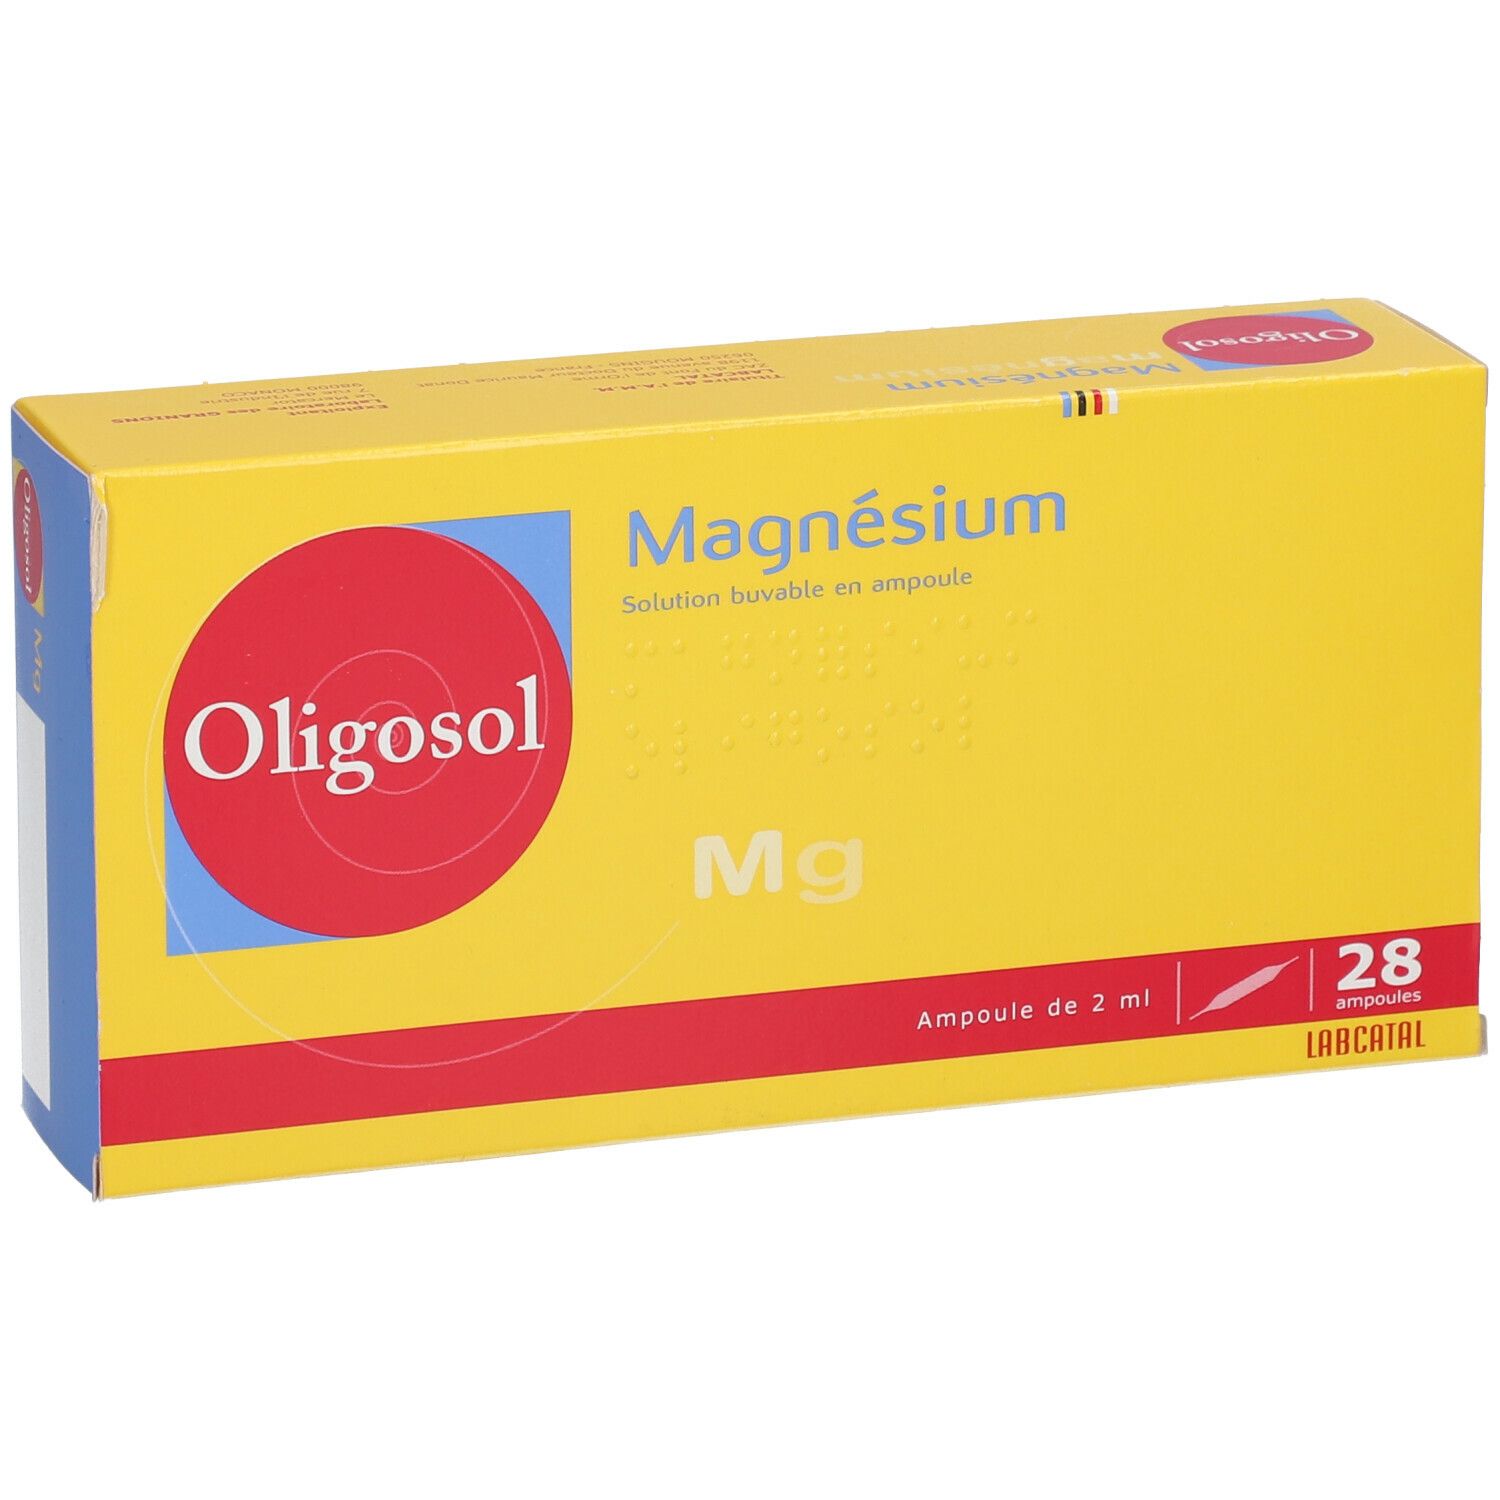 Laboratoire Labcatal Oligosol Magnésium